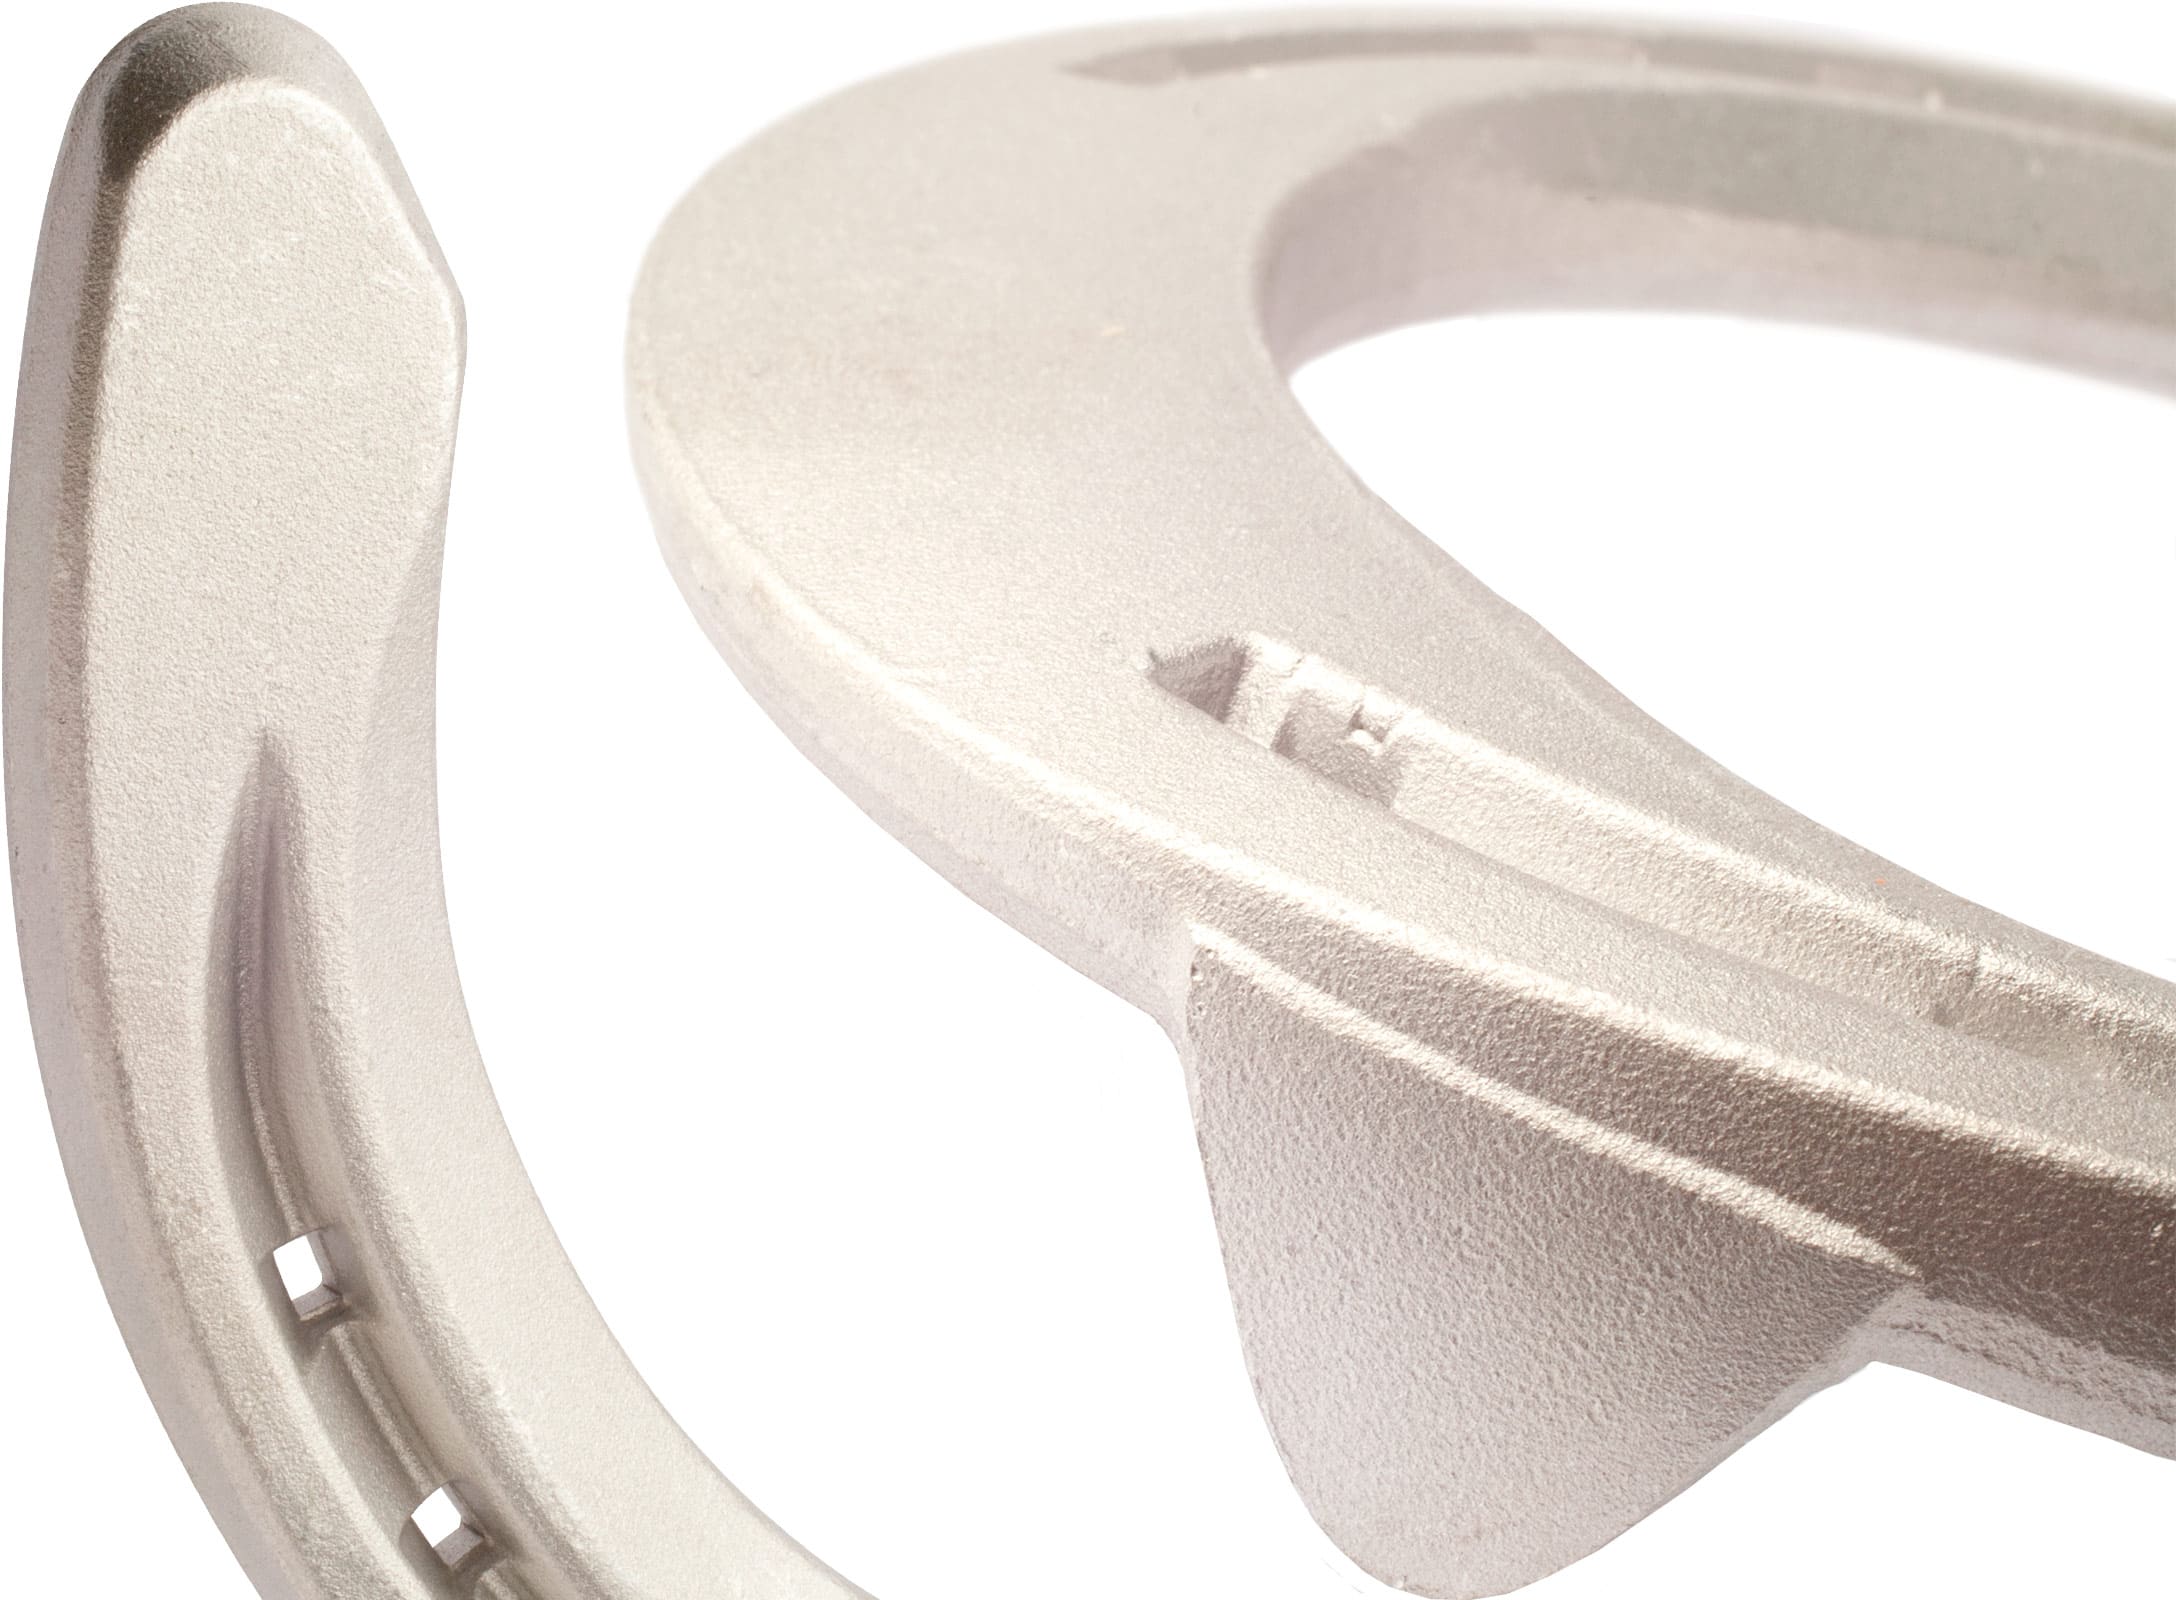 Mustad Equi-Librium Aluminium horseshoe, front, details